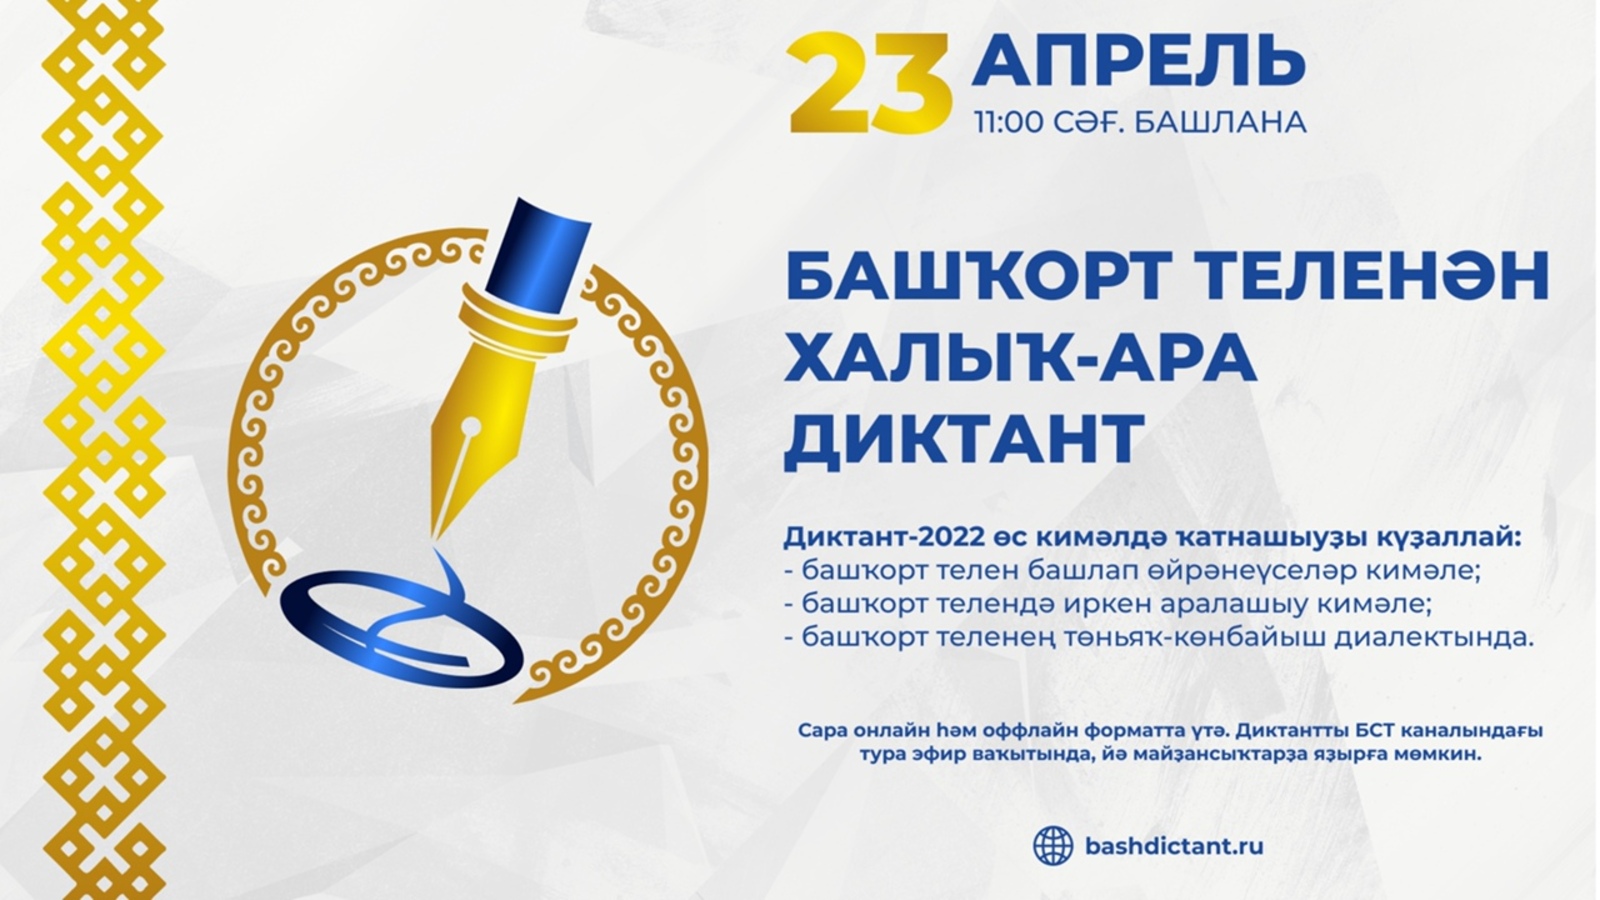 23 апреля состоится Международный диктант по башкирскому языку